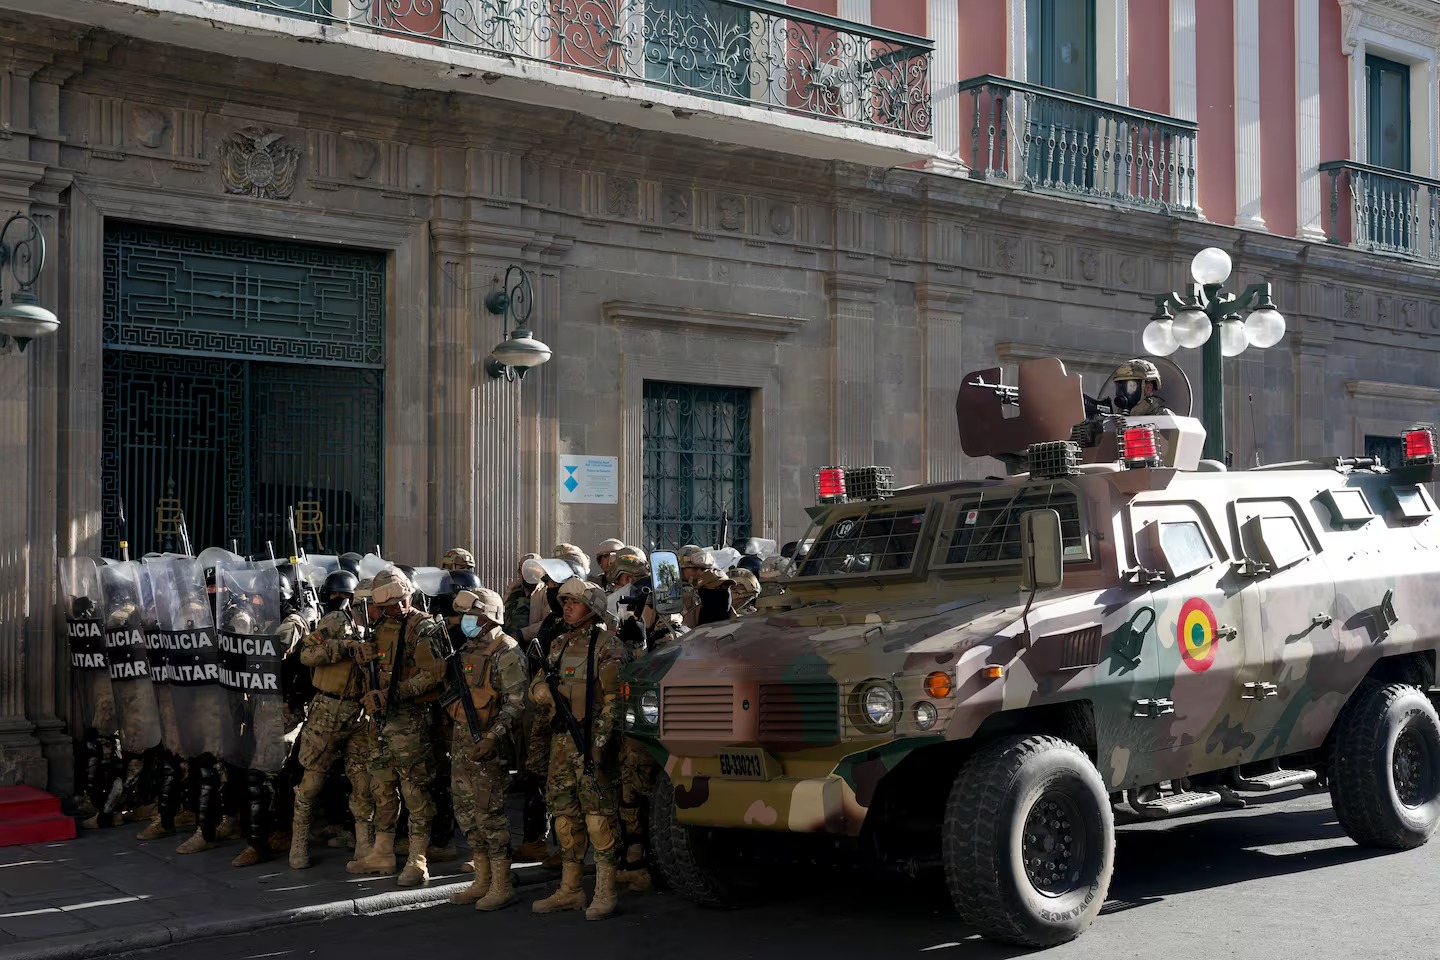 efectivos militares llegaron hasta las puertas de la casa de gobierno boliviana el miercoles pasado foto ap AZ3WRKK5X5EPMSVRBFPTP367ZE